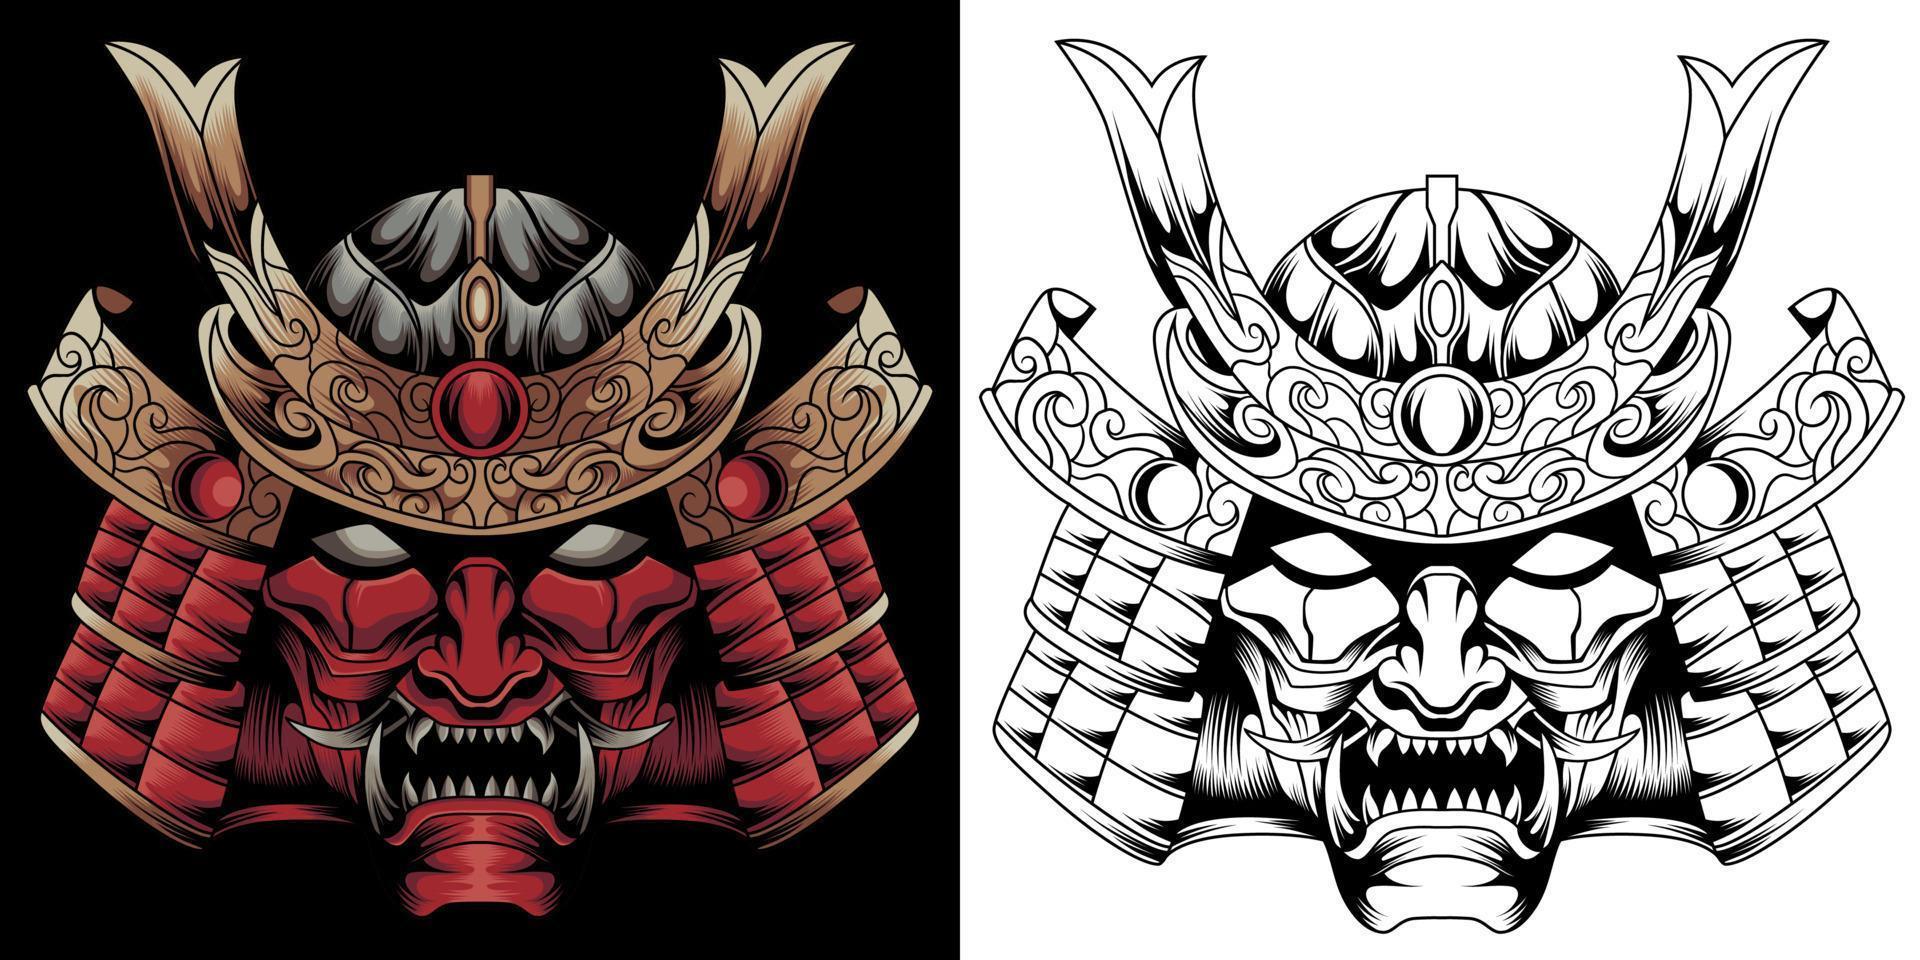 samurai krijger masker. traditioneel schild van Japans strijder. vector illustratie, overhemd grafisch.